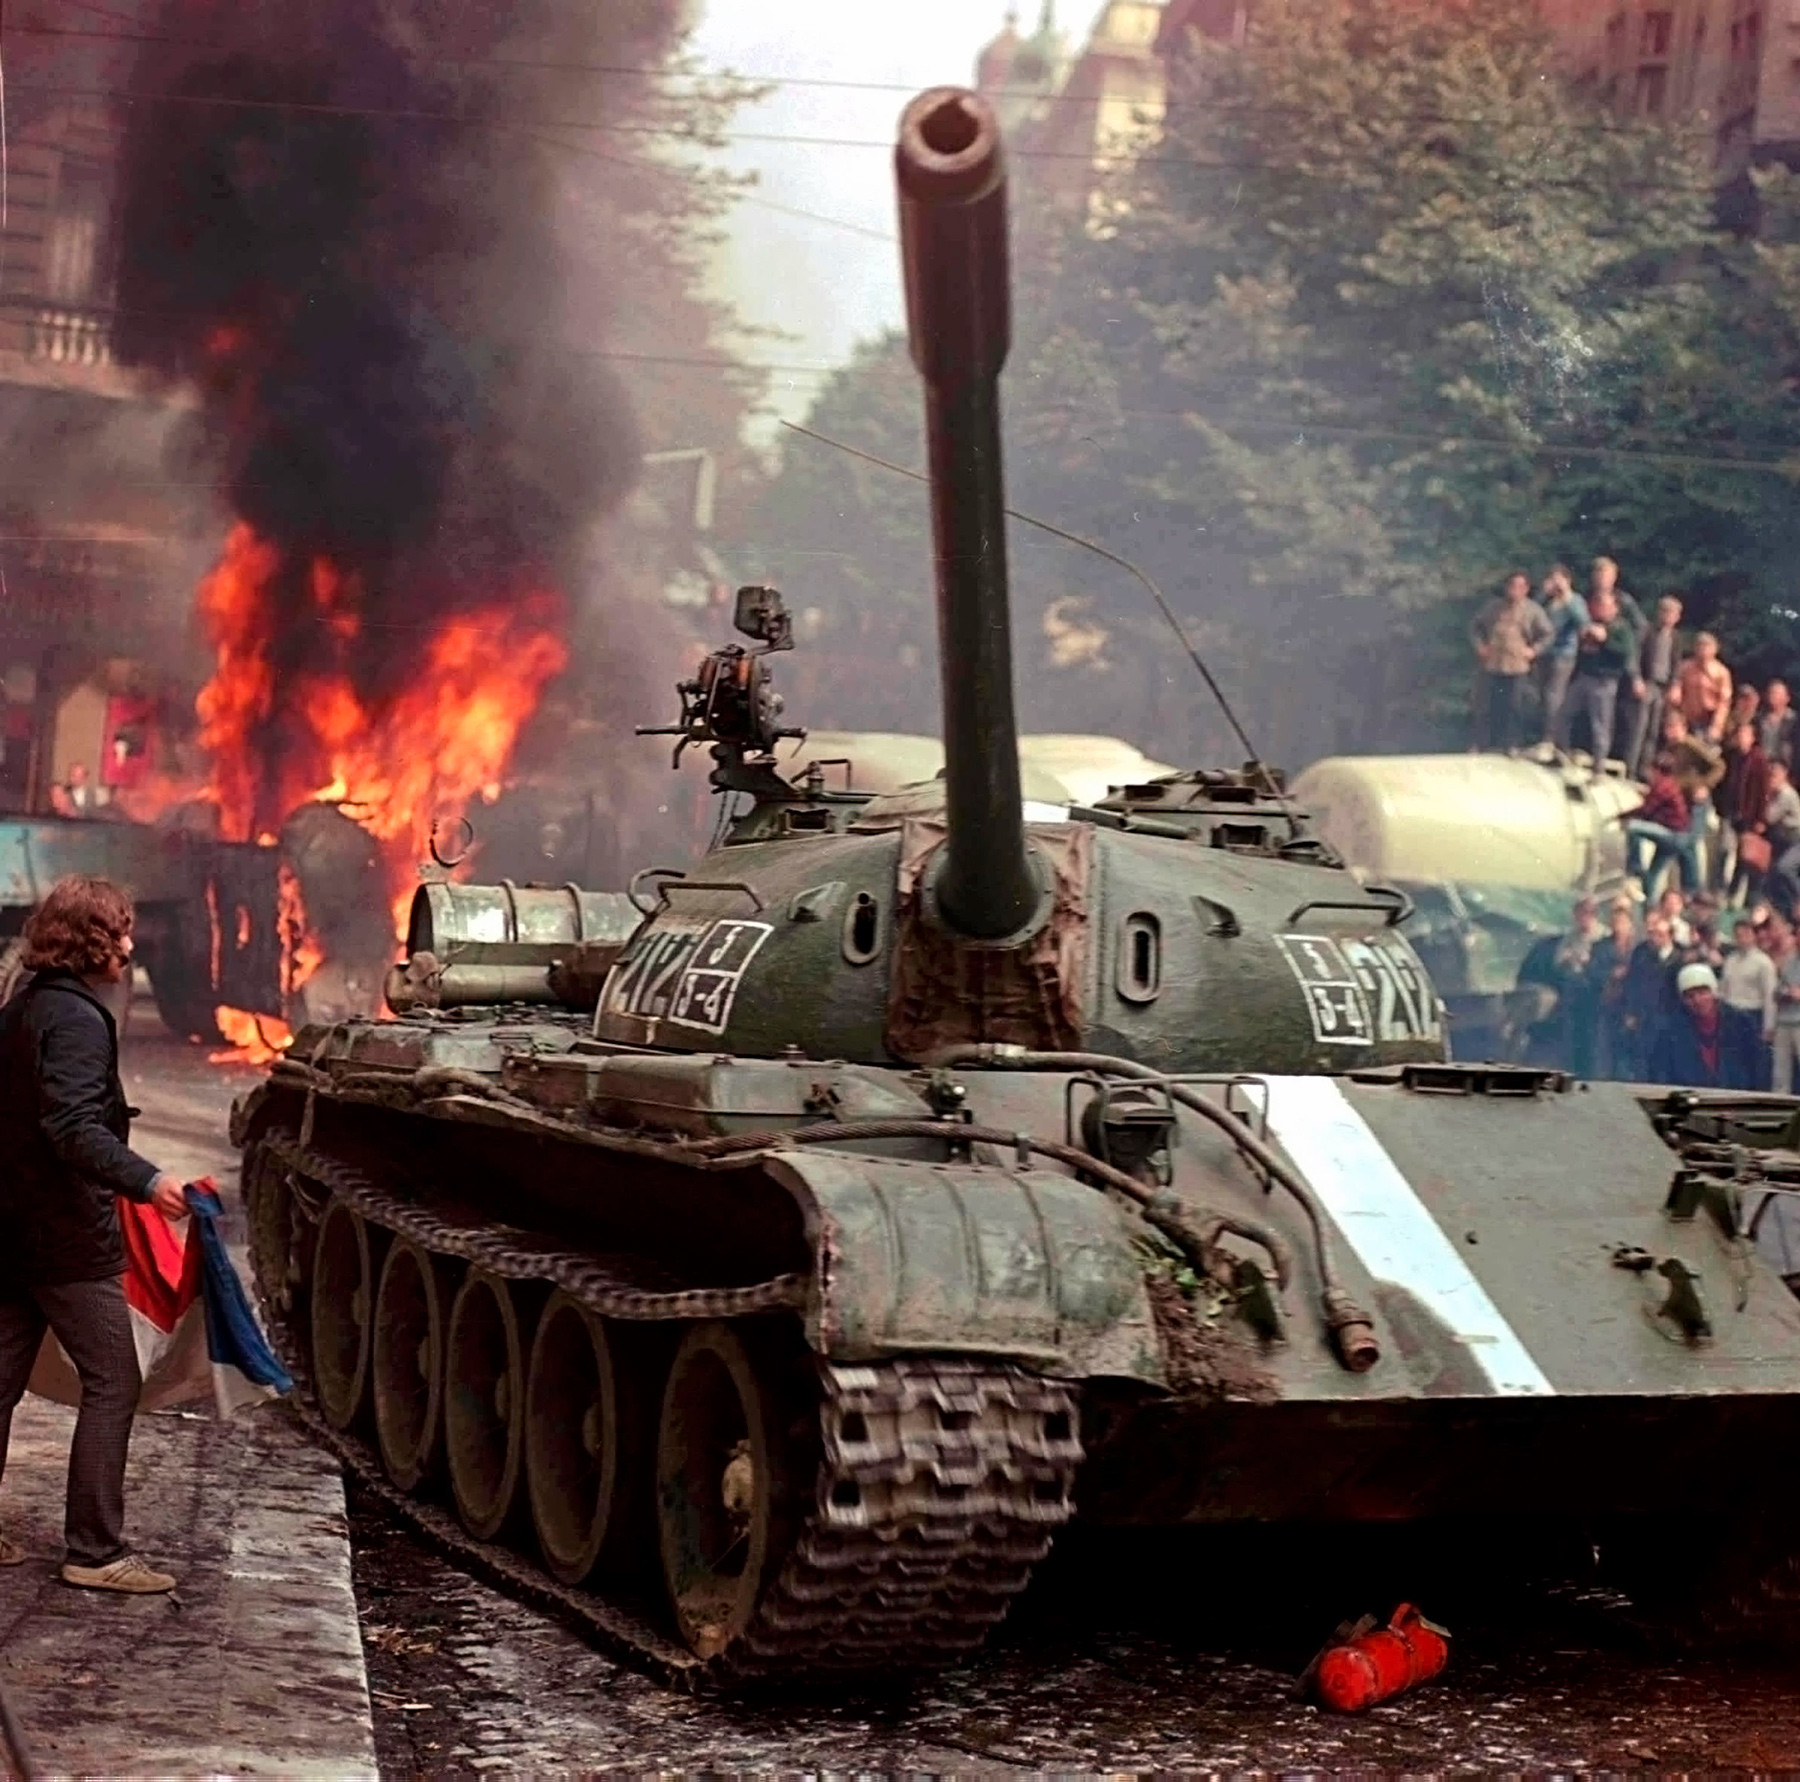 Sovjetski tank prebija barikado pri češkoslovaškem nacionalnem radiu v Pragi, avgust 1968